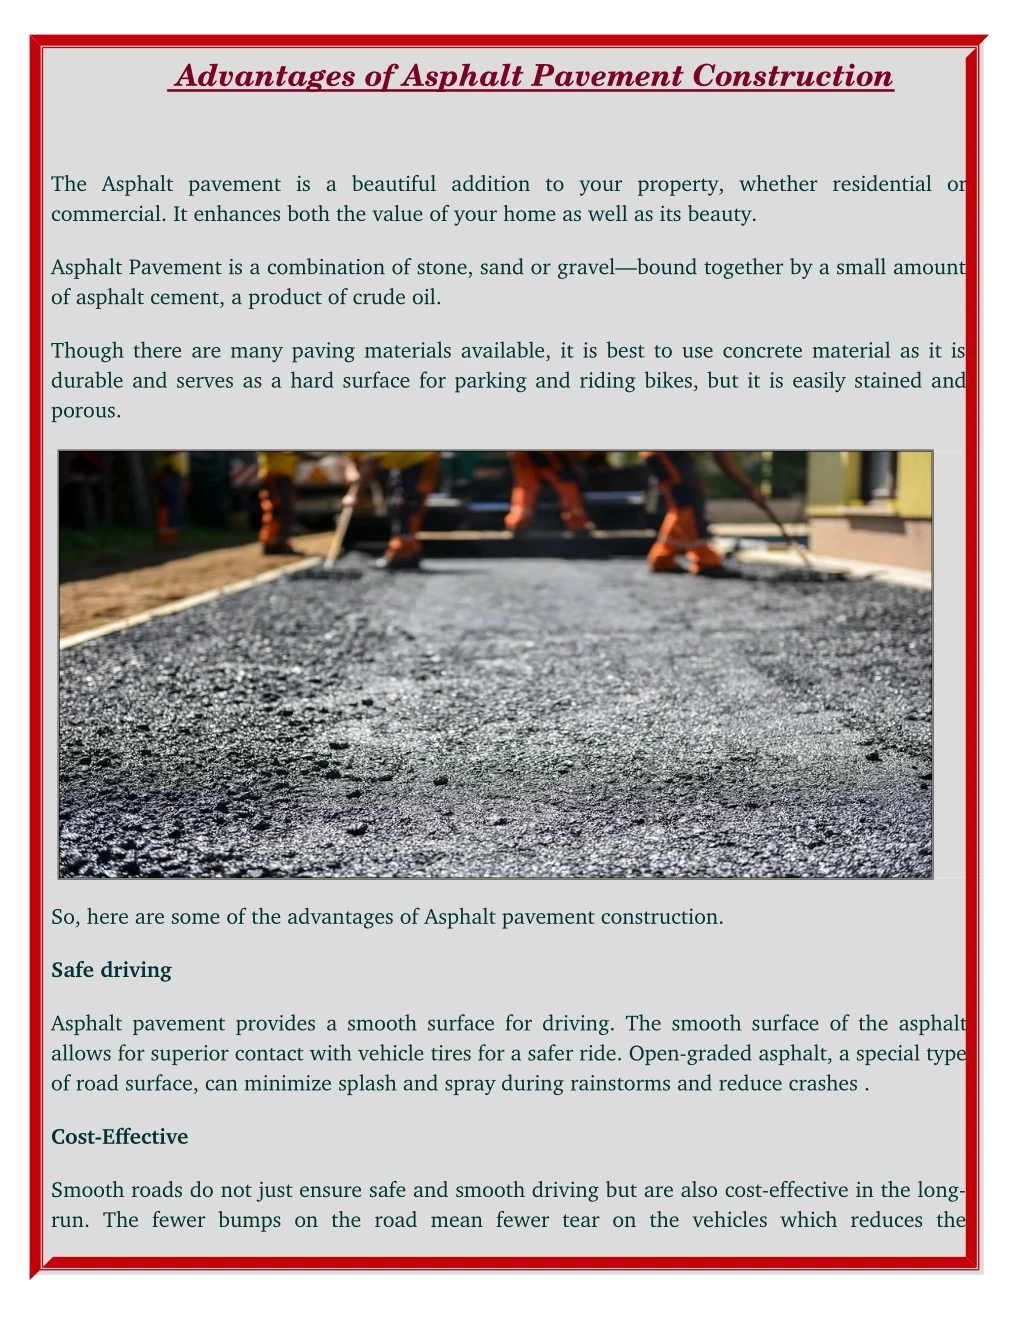 advantages of asphalt pavement construction